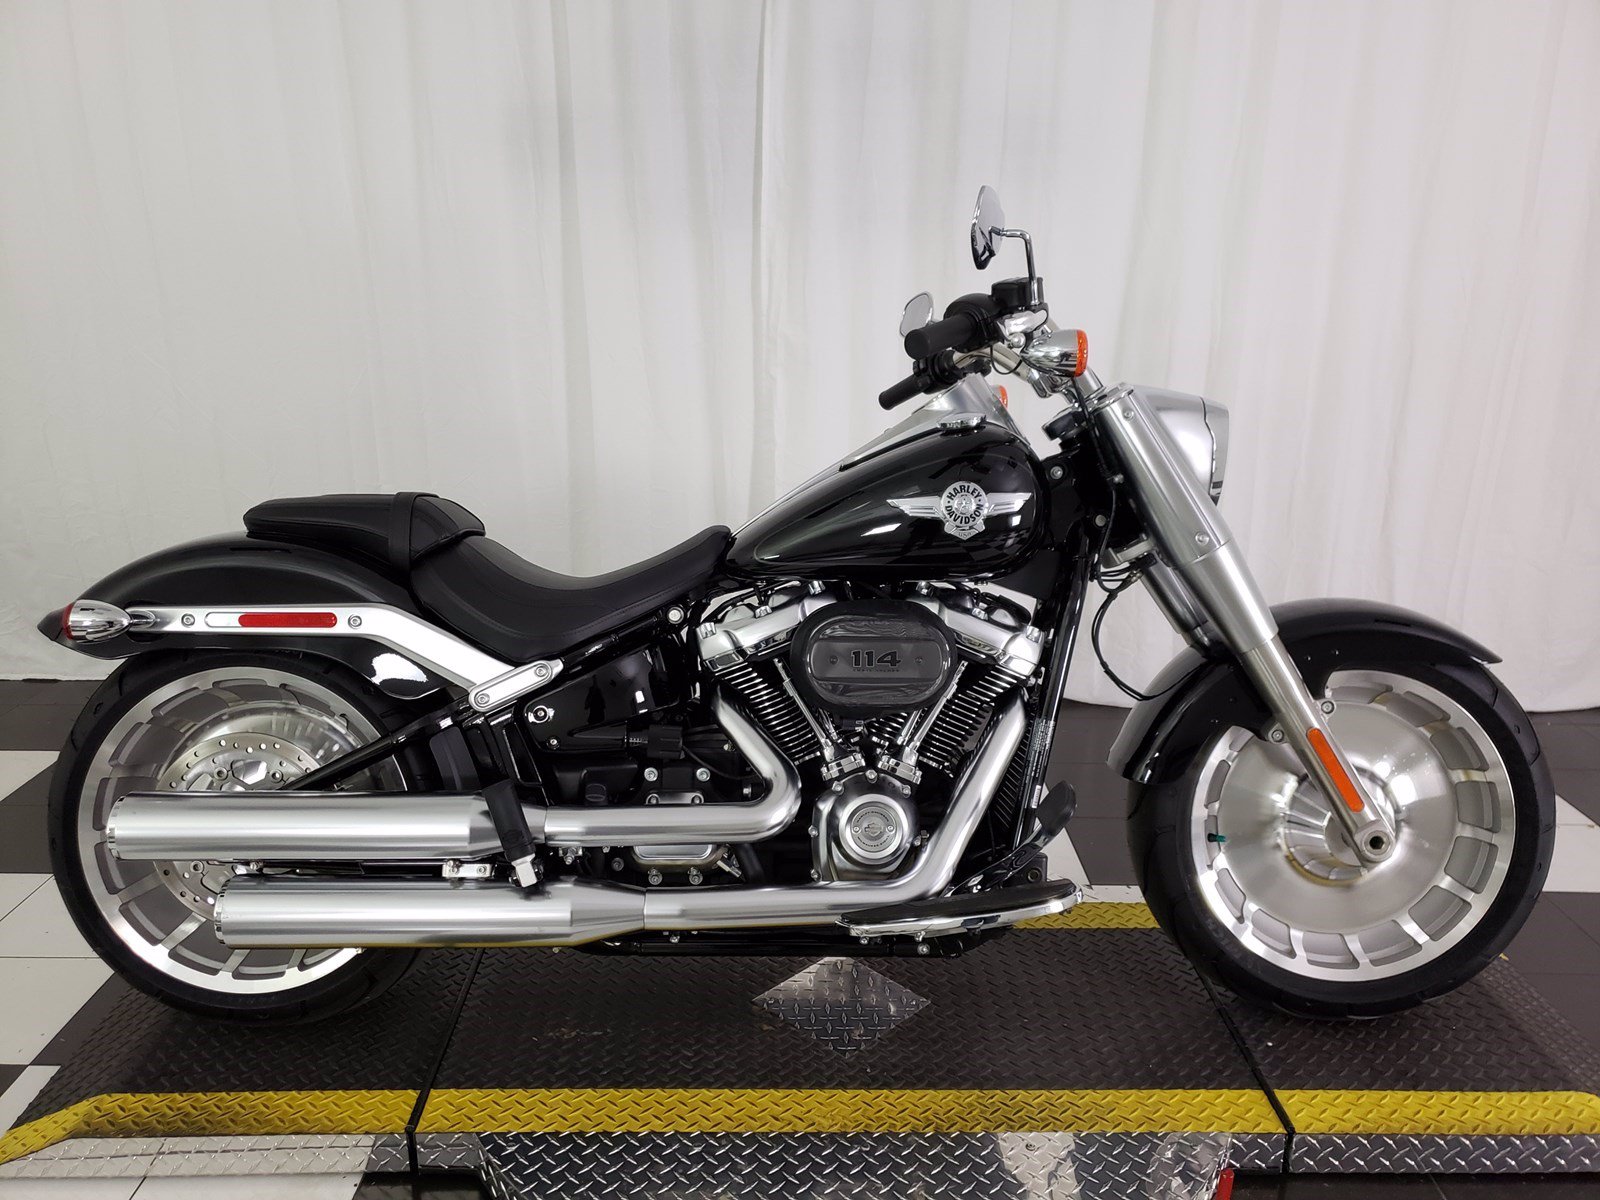 Harley Davidson New Models For 2020